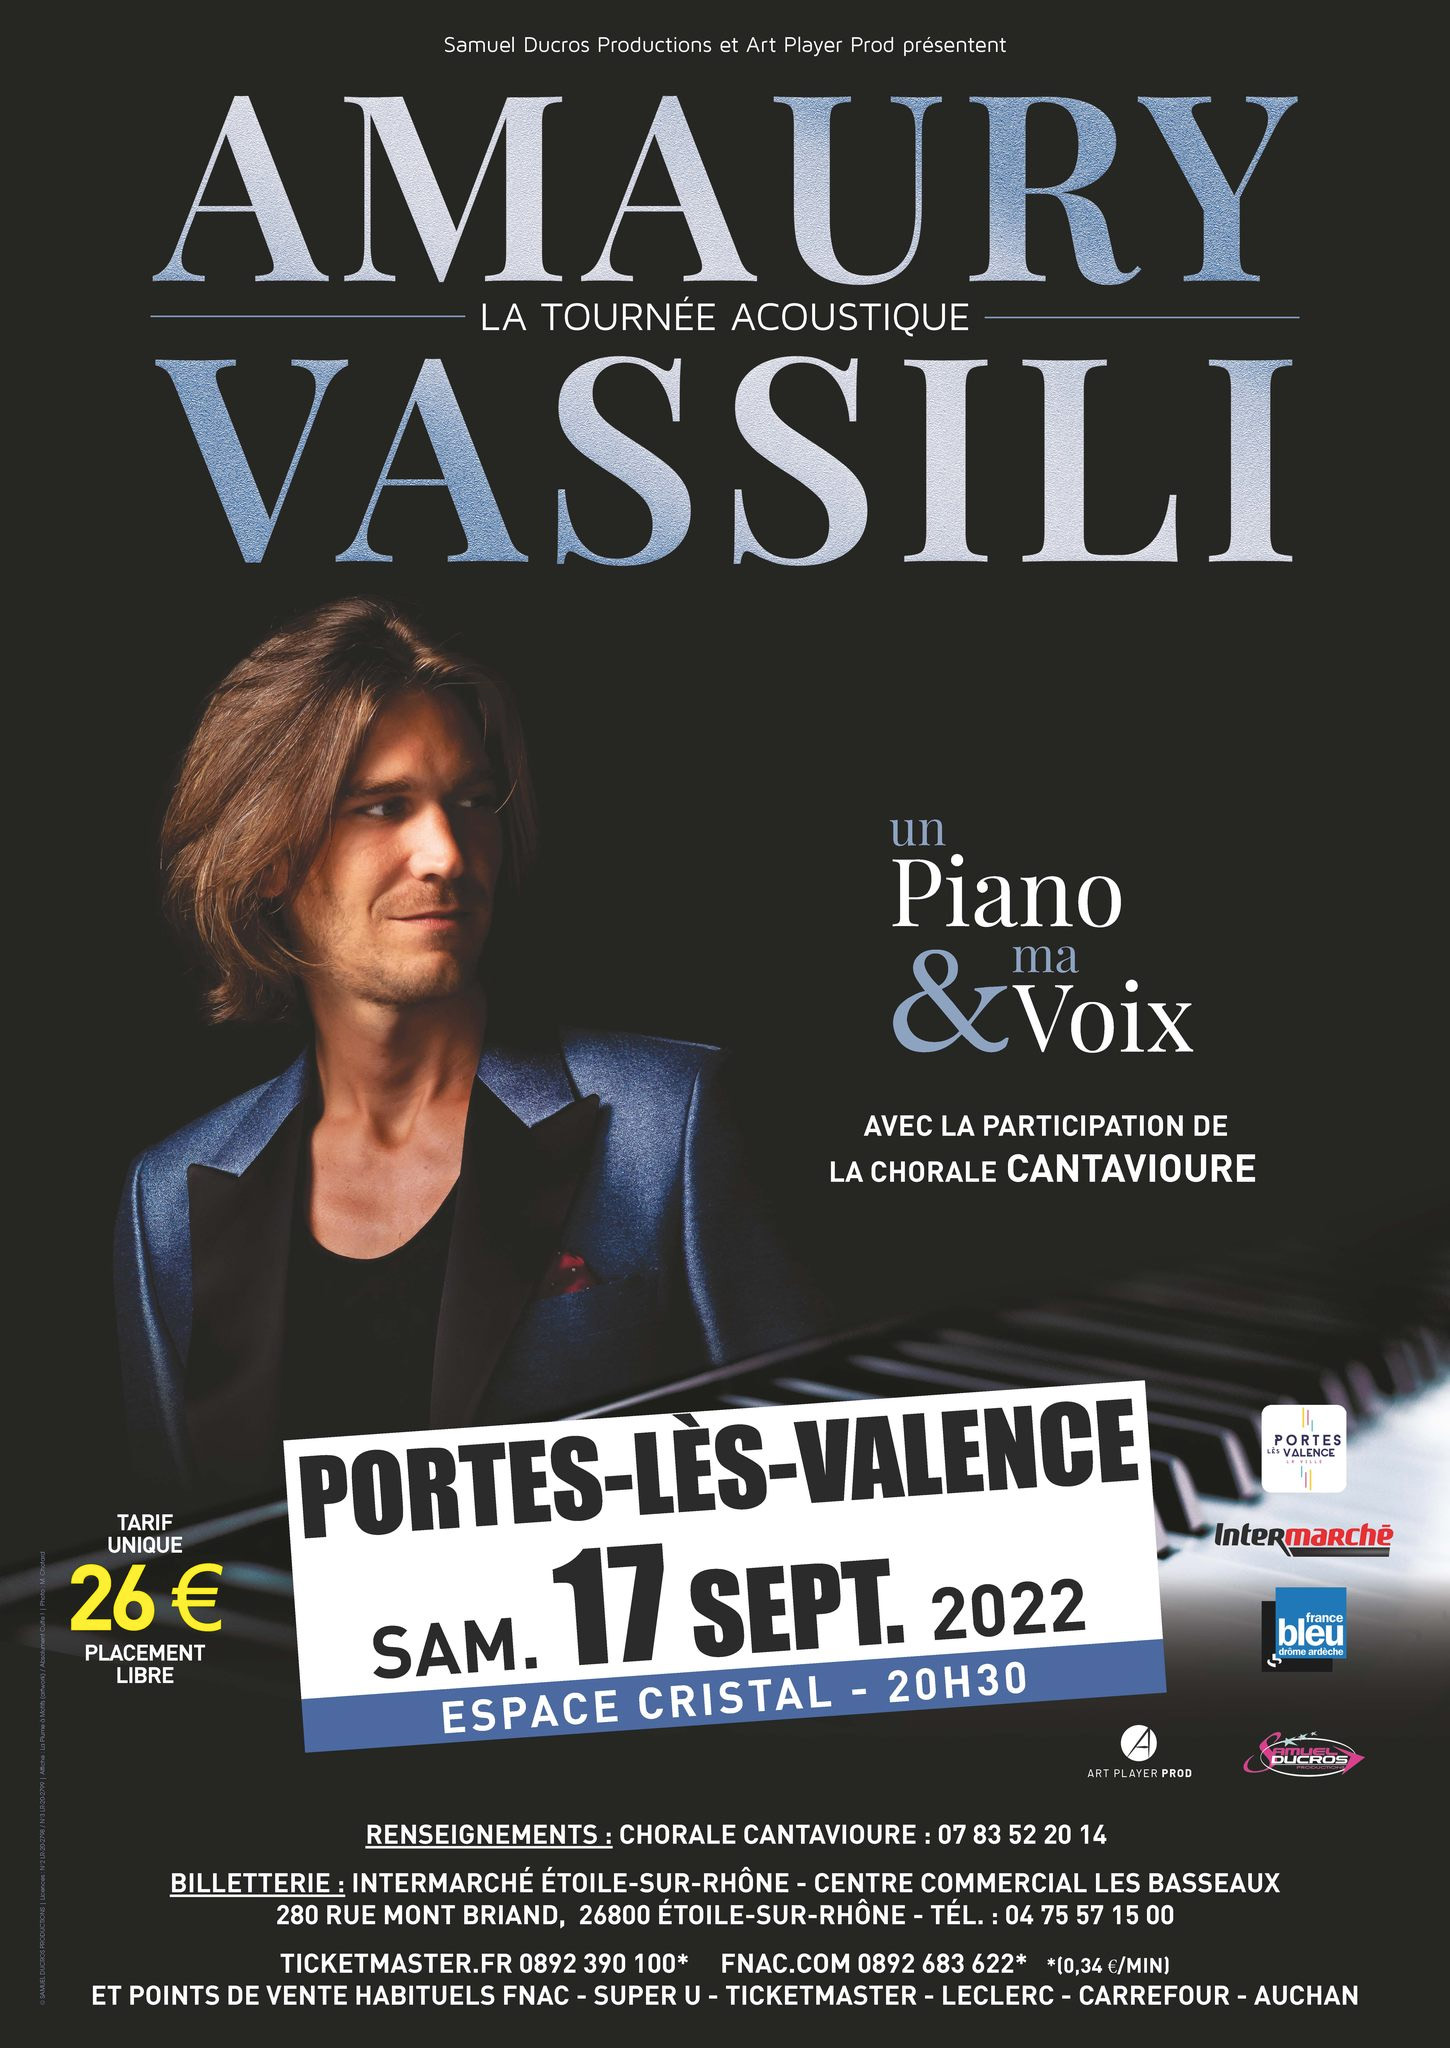 Vassili en concert